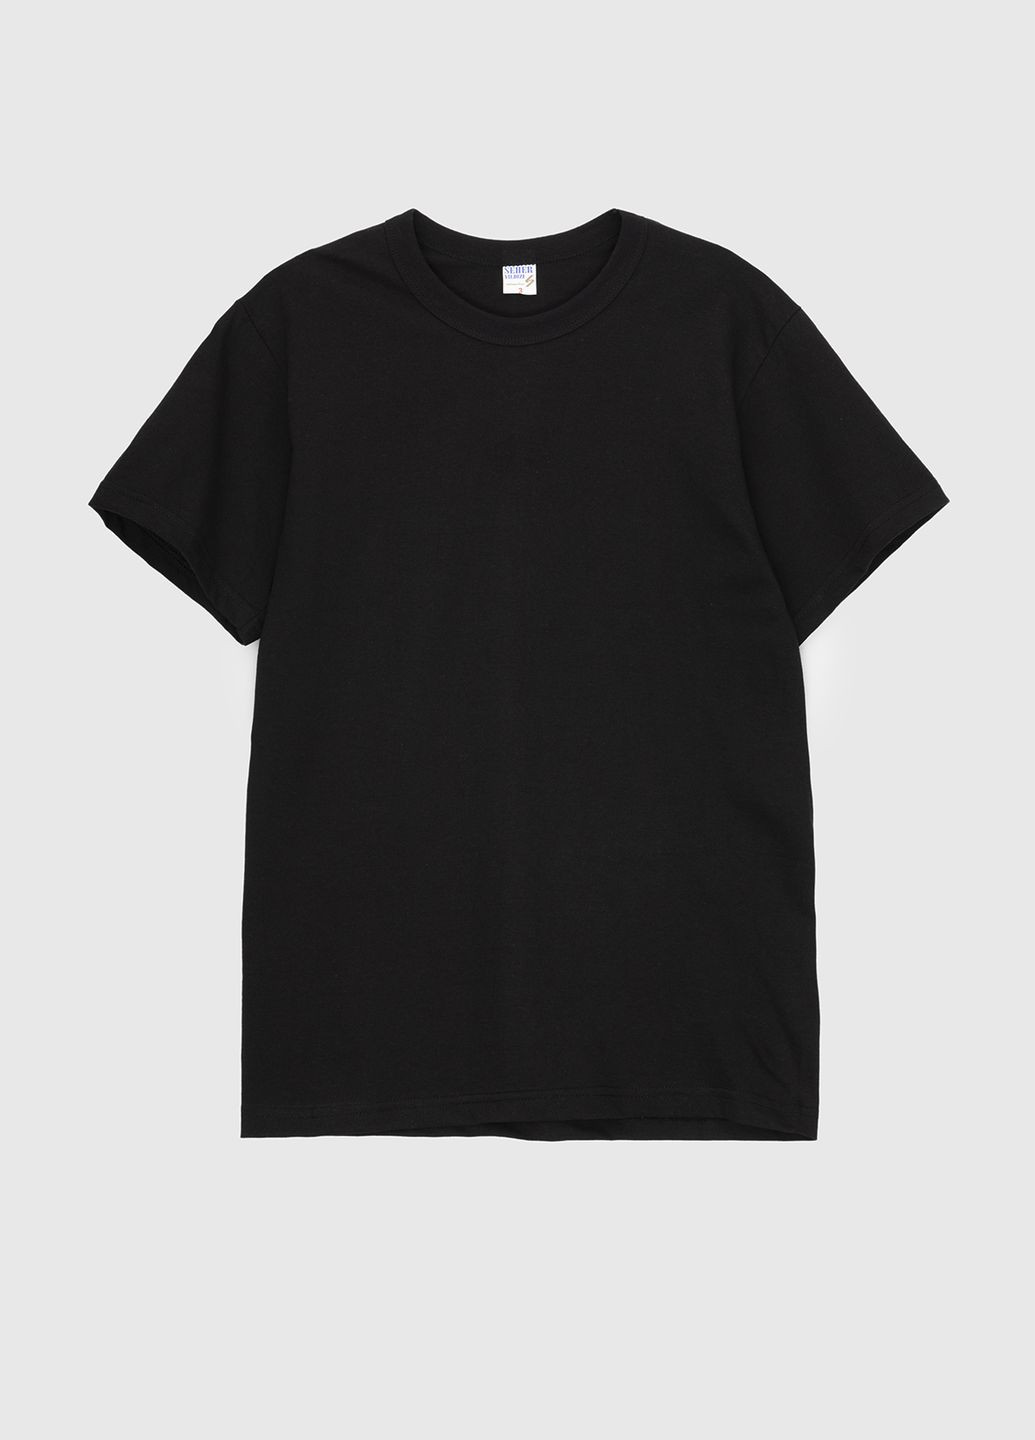 Черная футболка-бельё Doruk